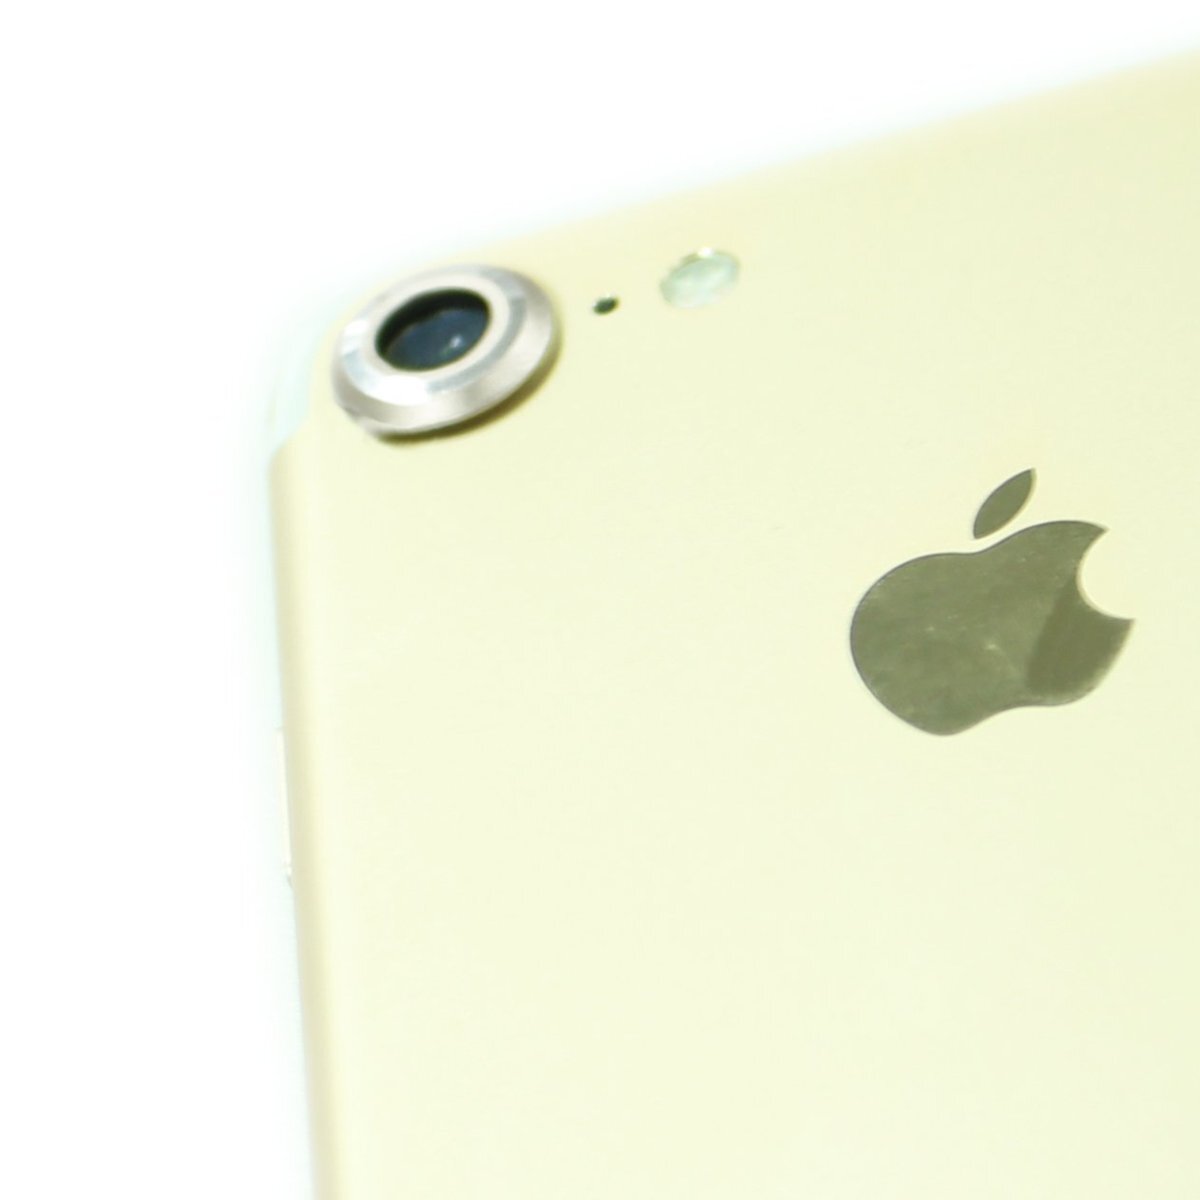 即決・送料込) iPhone SE(第2世代/2020年発売)/iPhone 8/iPhone 7 対応 背面カメラレンズカバー シルバー_画像5